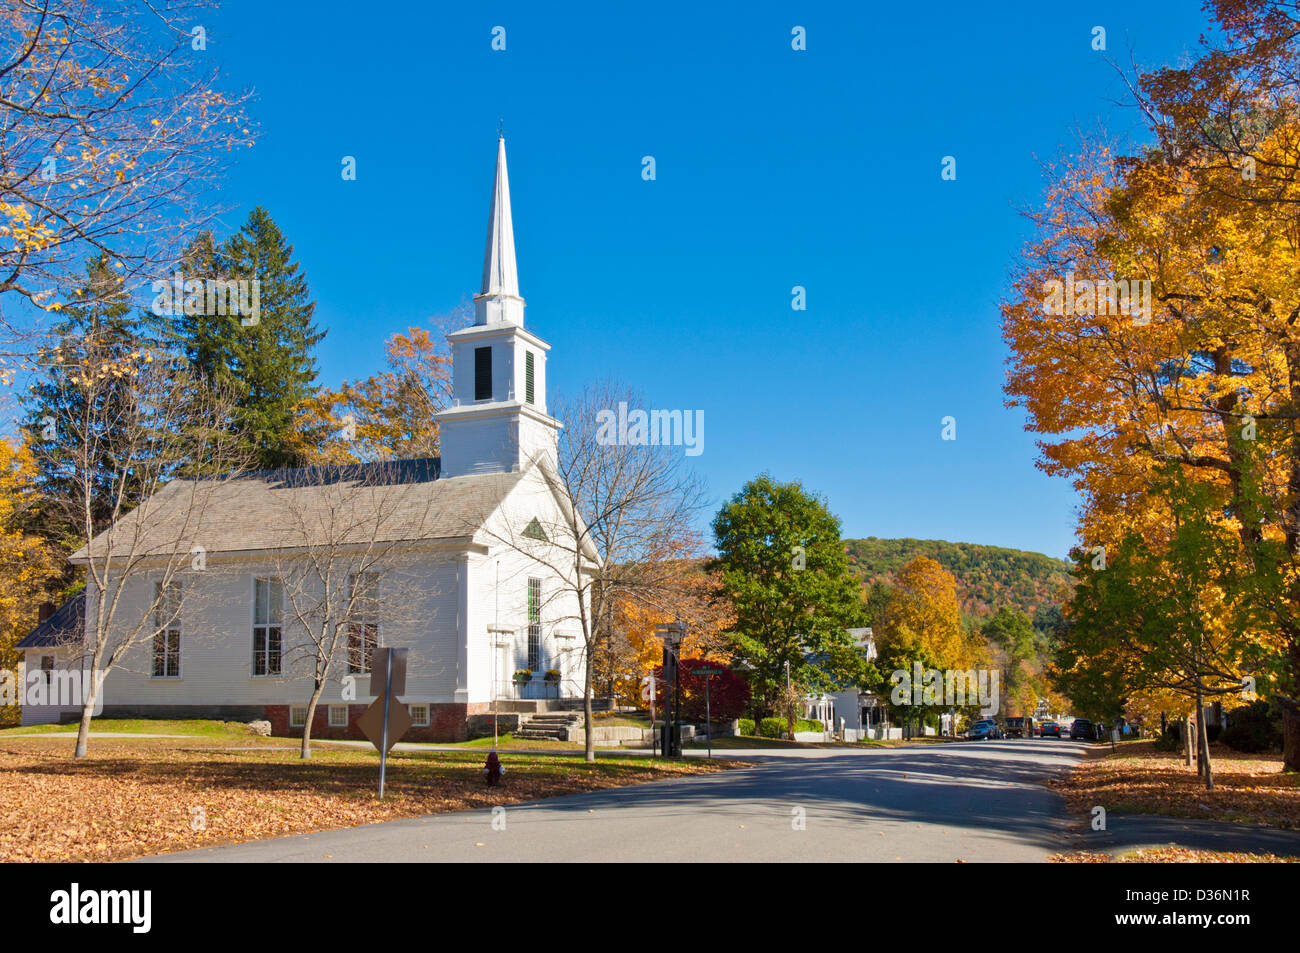 Herbst Herbst Farben Farben um traditionelle weiße Holz verkleidete Kirche Grafton Vermont USA Vereinigte Staaten von Amerika Stockfoto